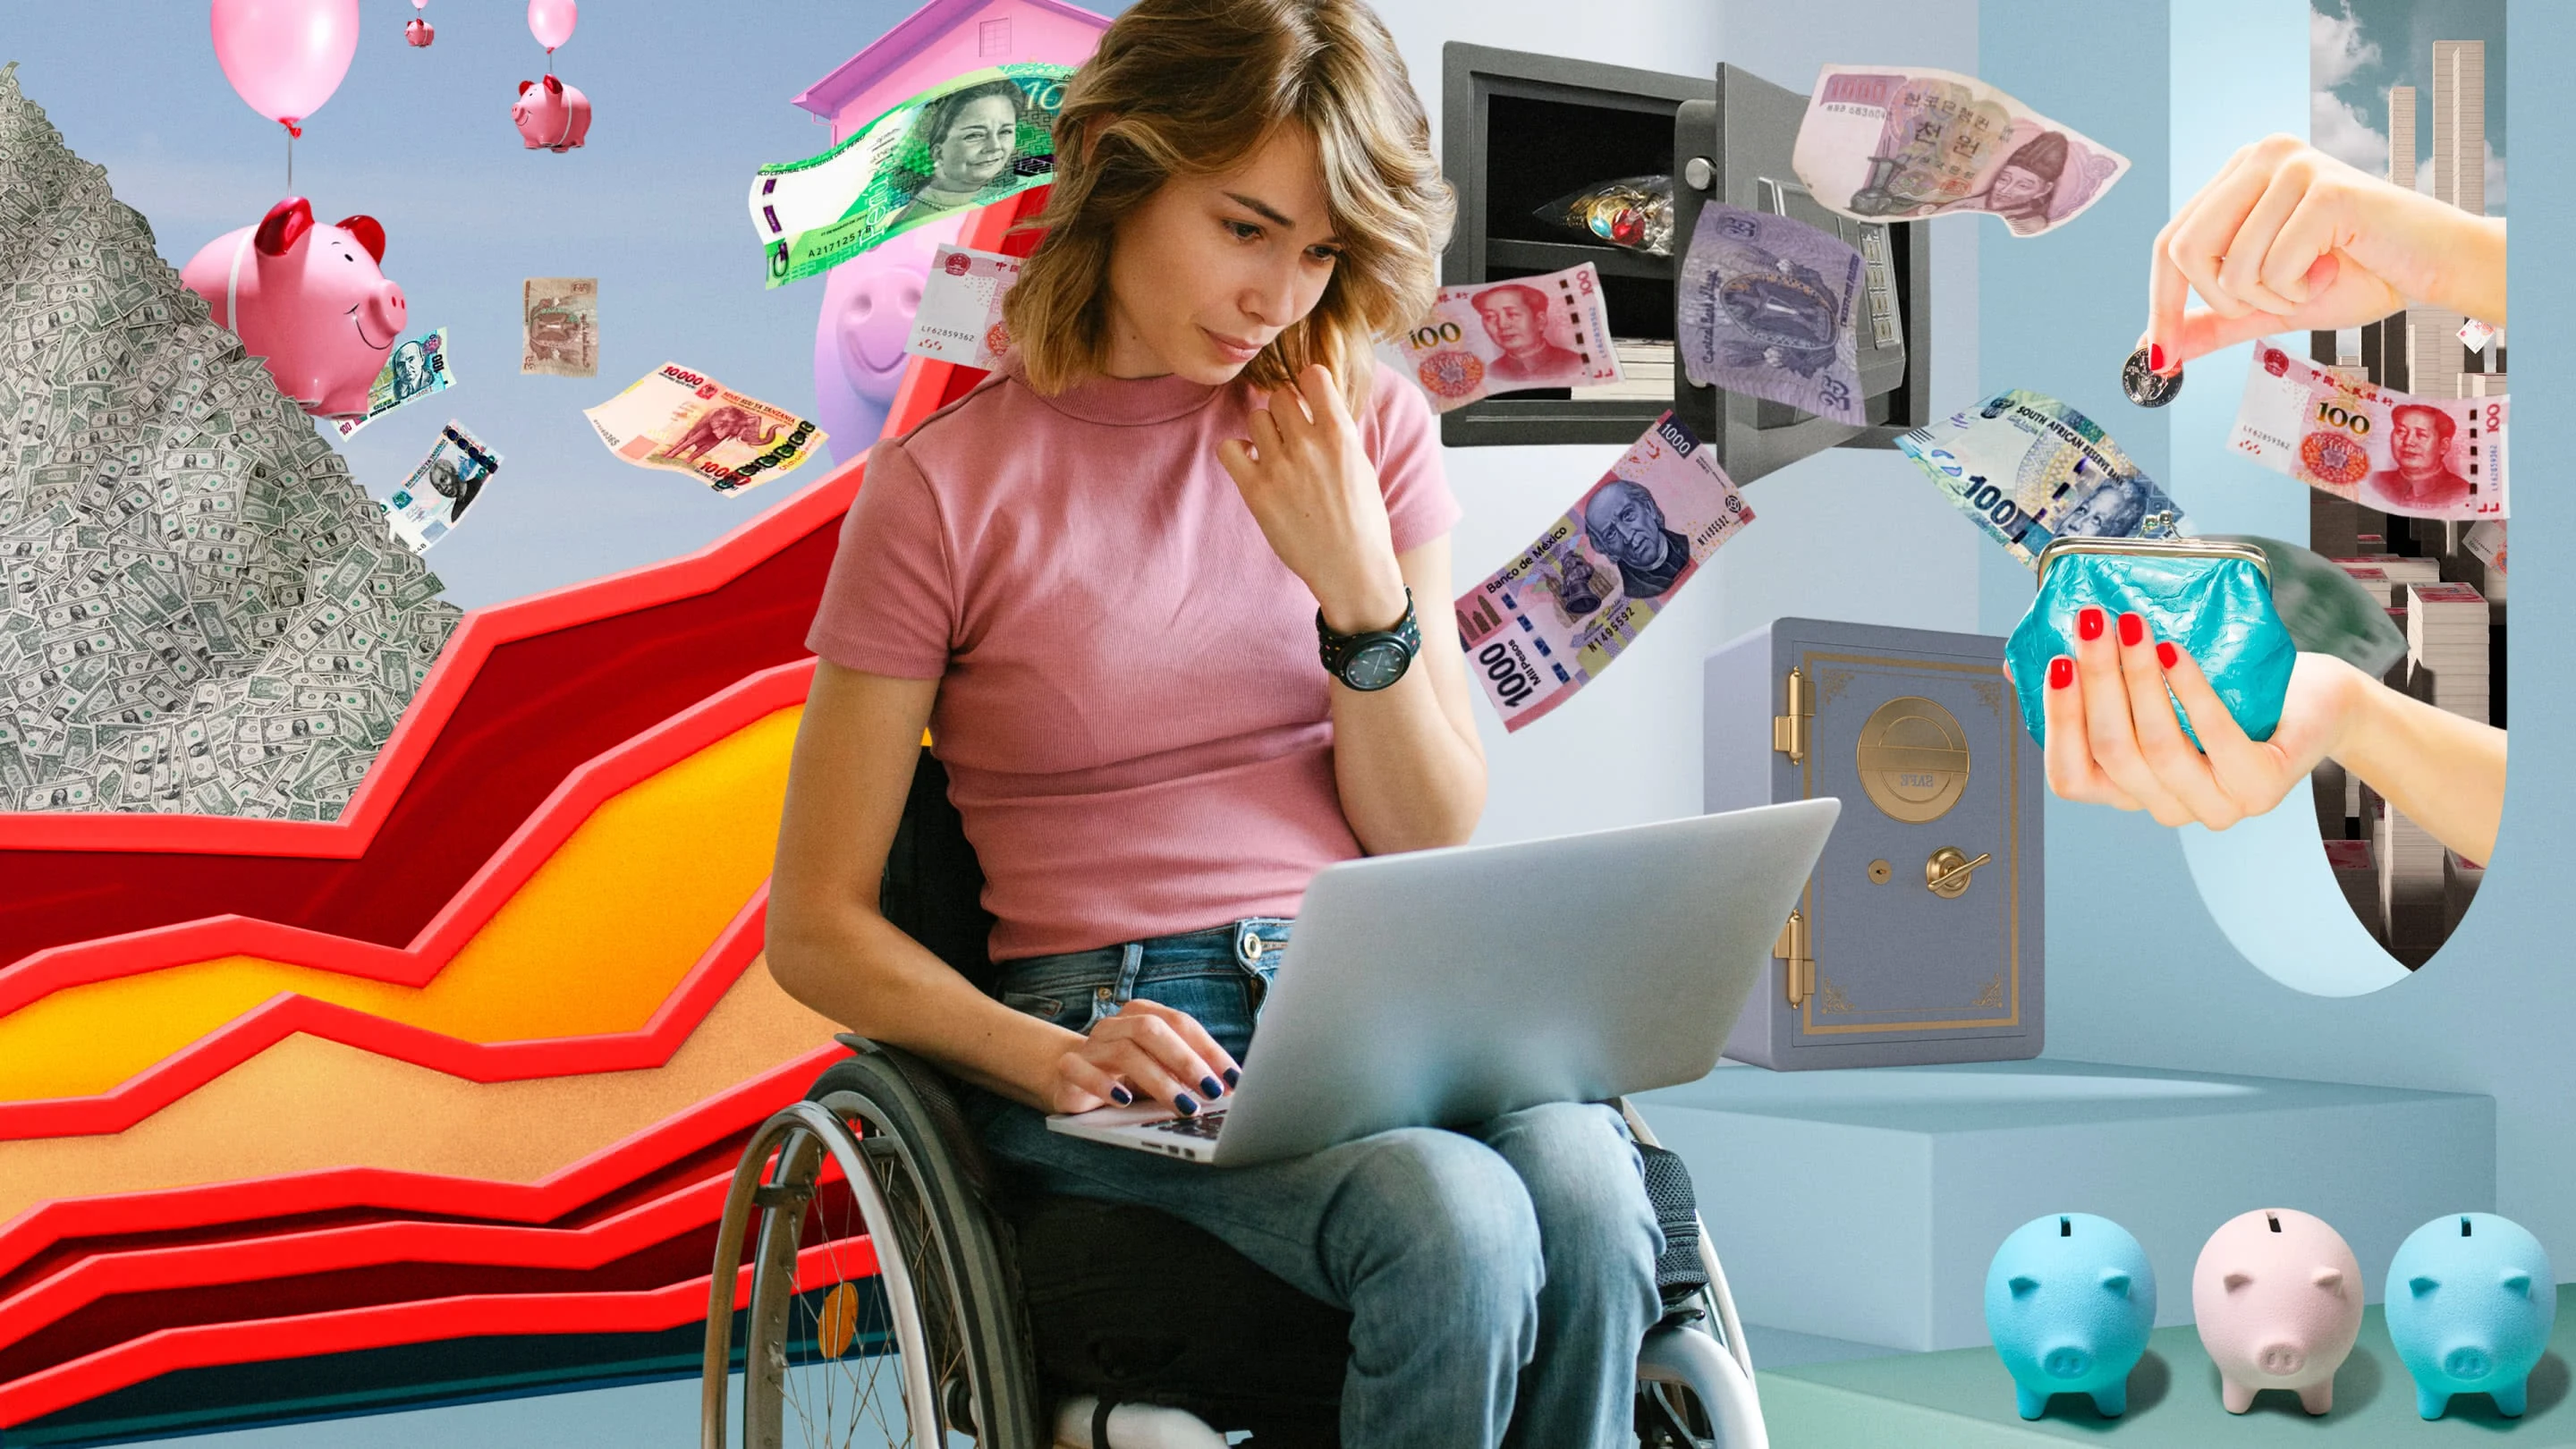 Collage zum Thema Finanzen. Eine weiße Frau in einem Rollstuhl in der Mitte, die an einem Laptop arbeitet. Ein abstrakter Graph mit roten Linien auf der linken Seite. Schwebende Geldscheine verschiedener Währungen und Länder. Kleine Spardosen in Pastellfarben.